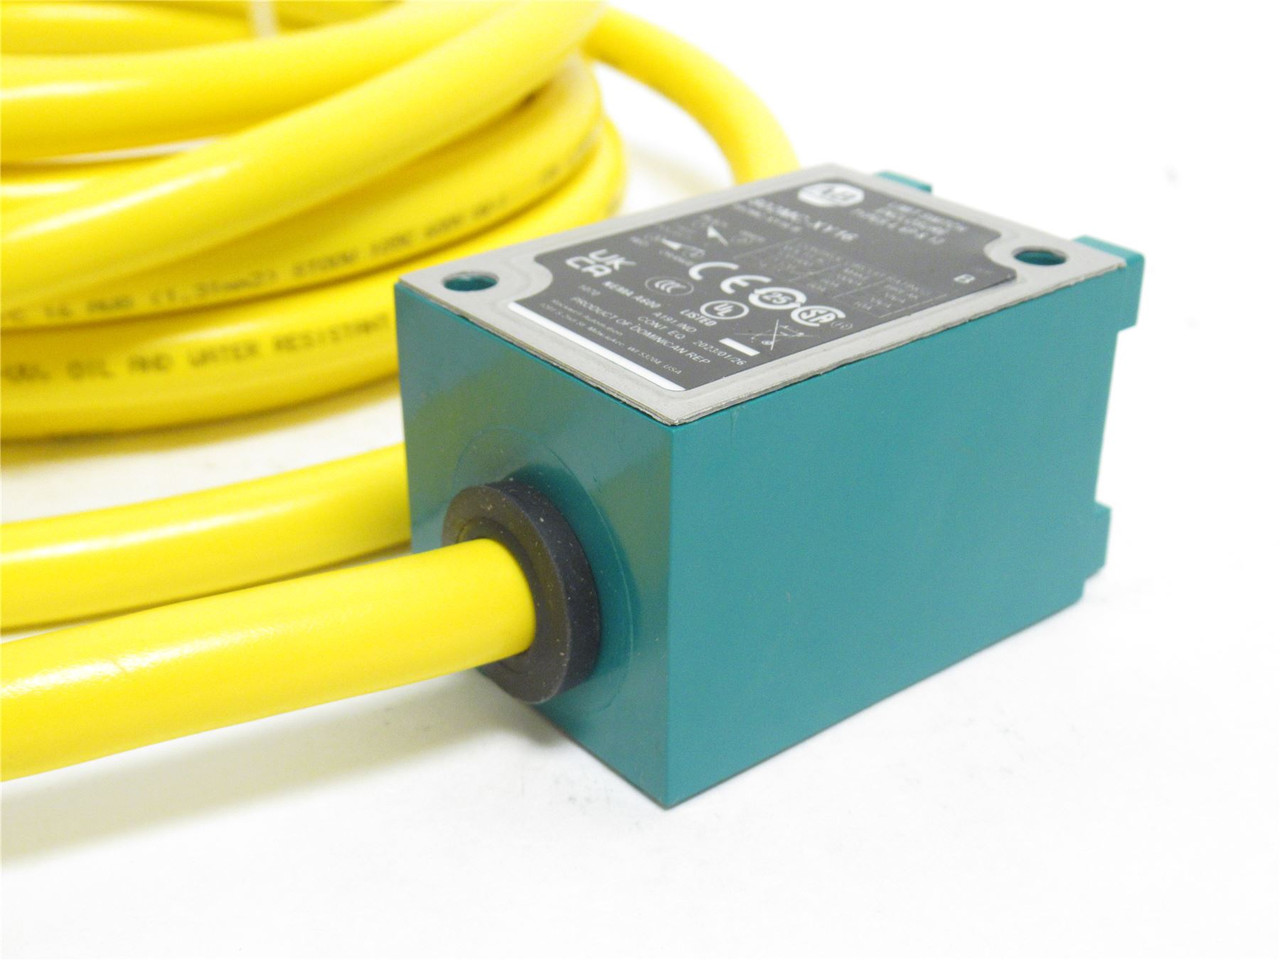 Allen-Bradley 802MC-XY16; Wired Limit Switch 60A; 600VAC